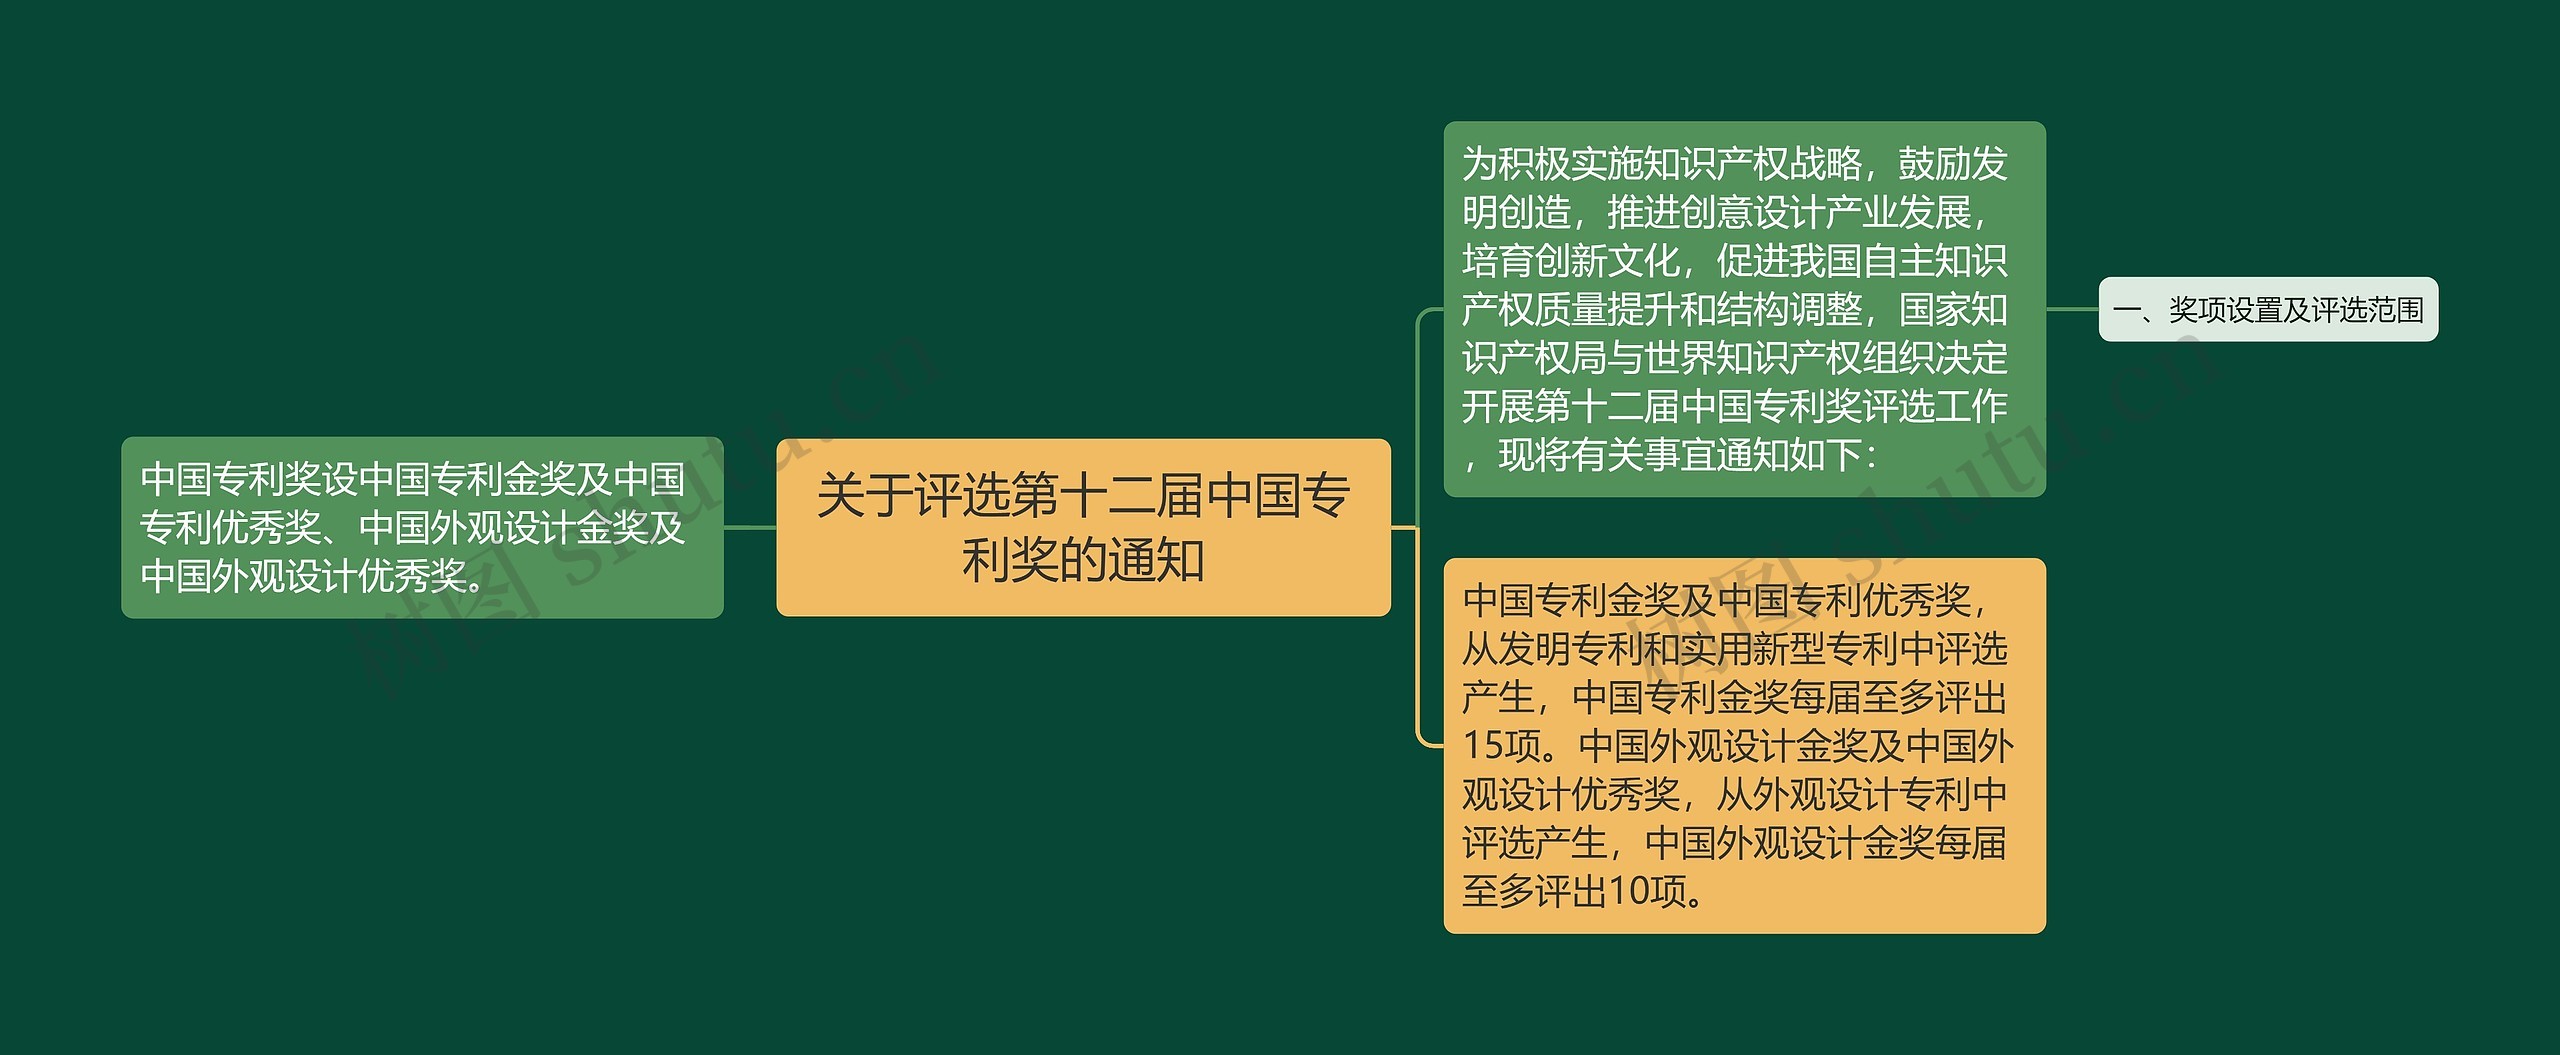 关于评选第十二届中国专利奖的通知思维导图